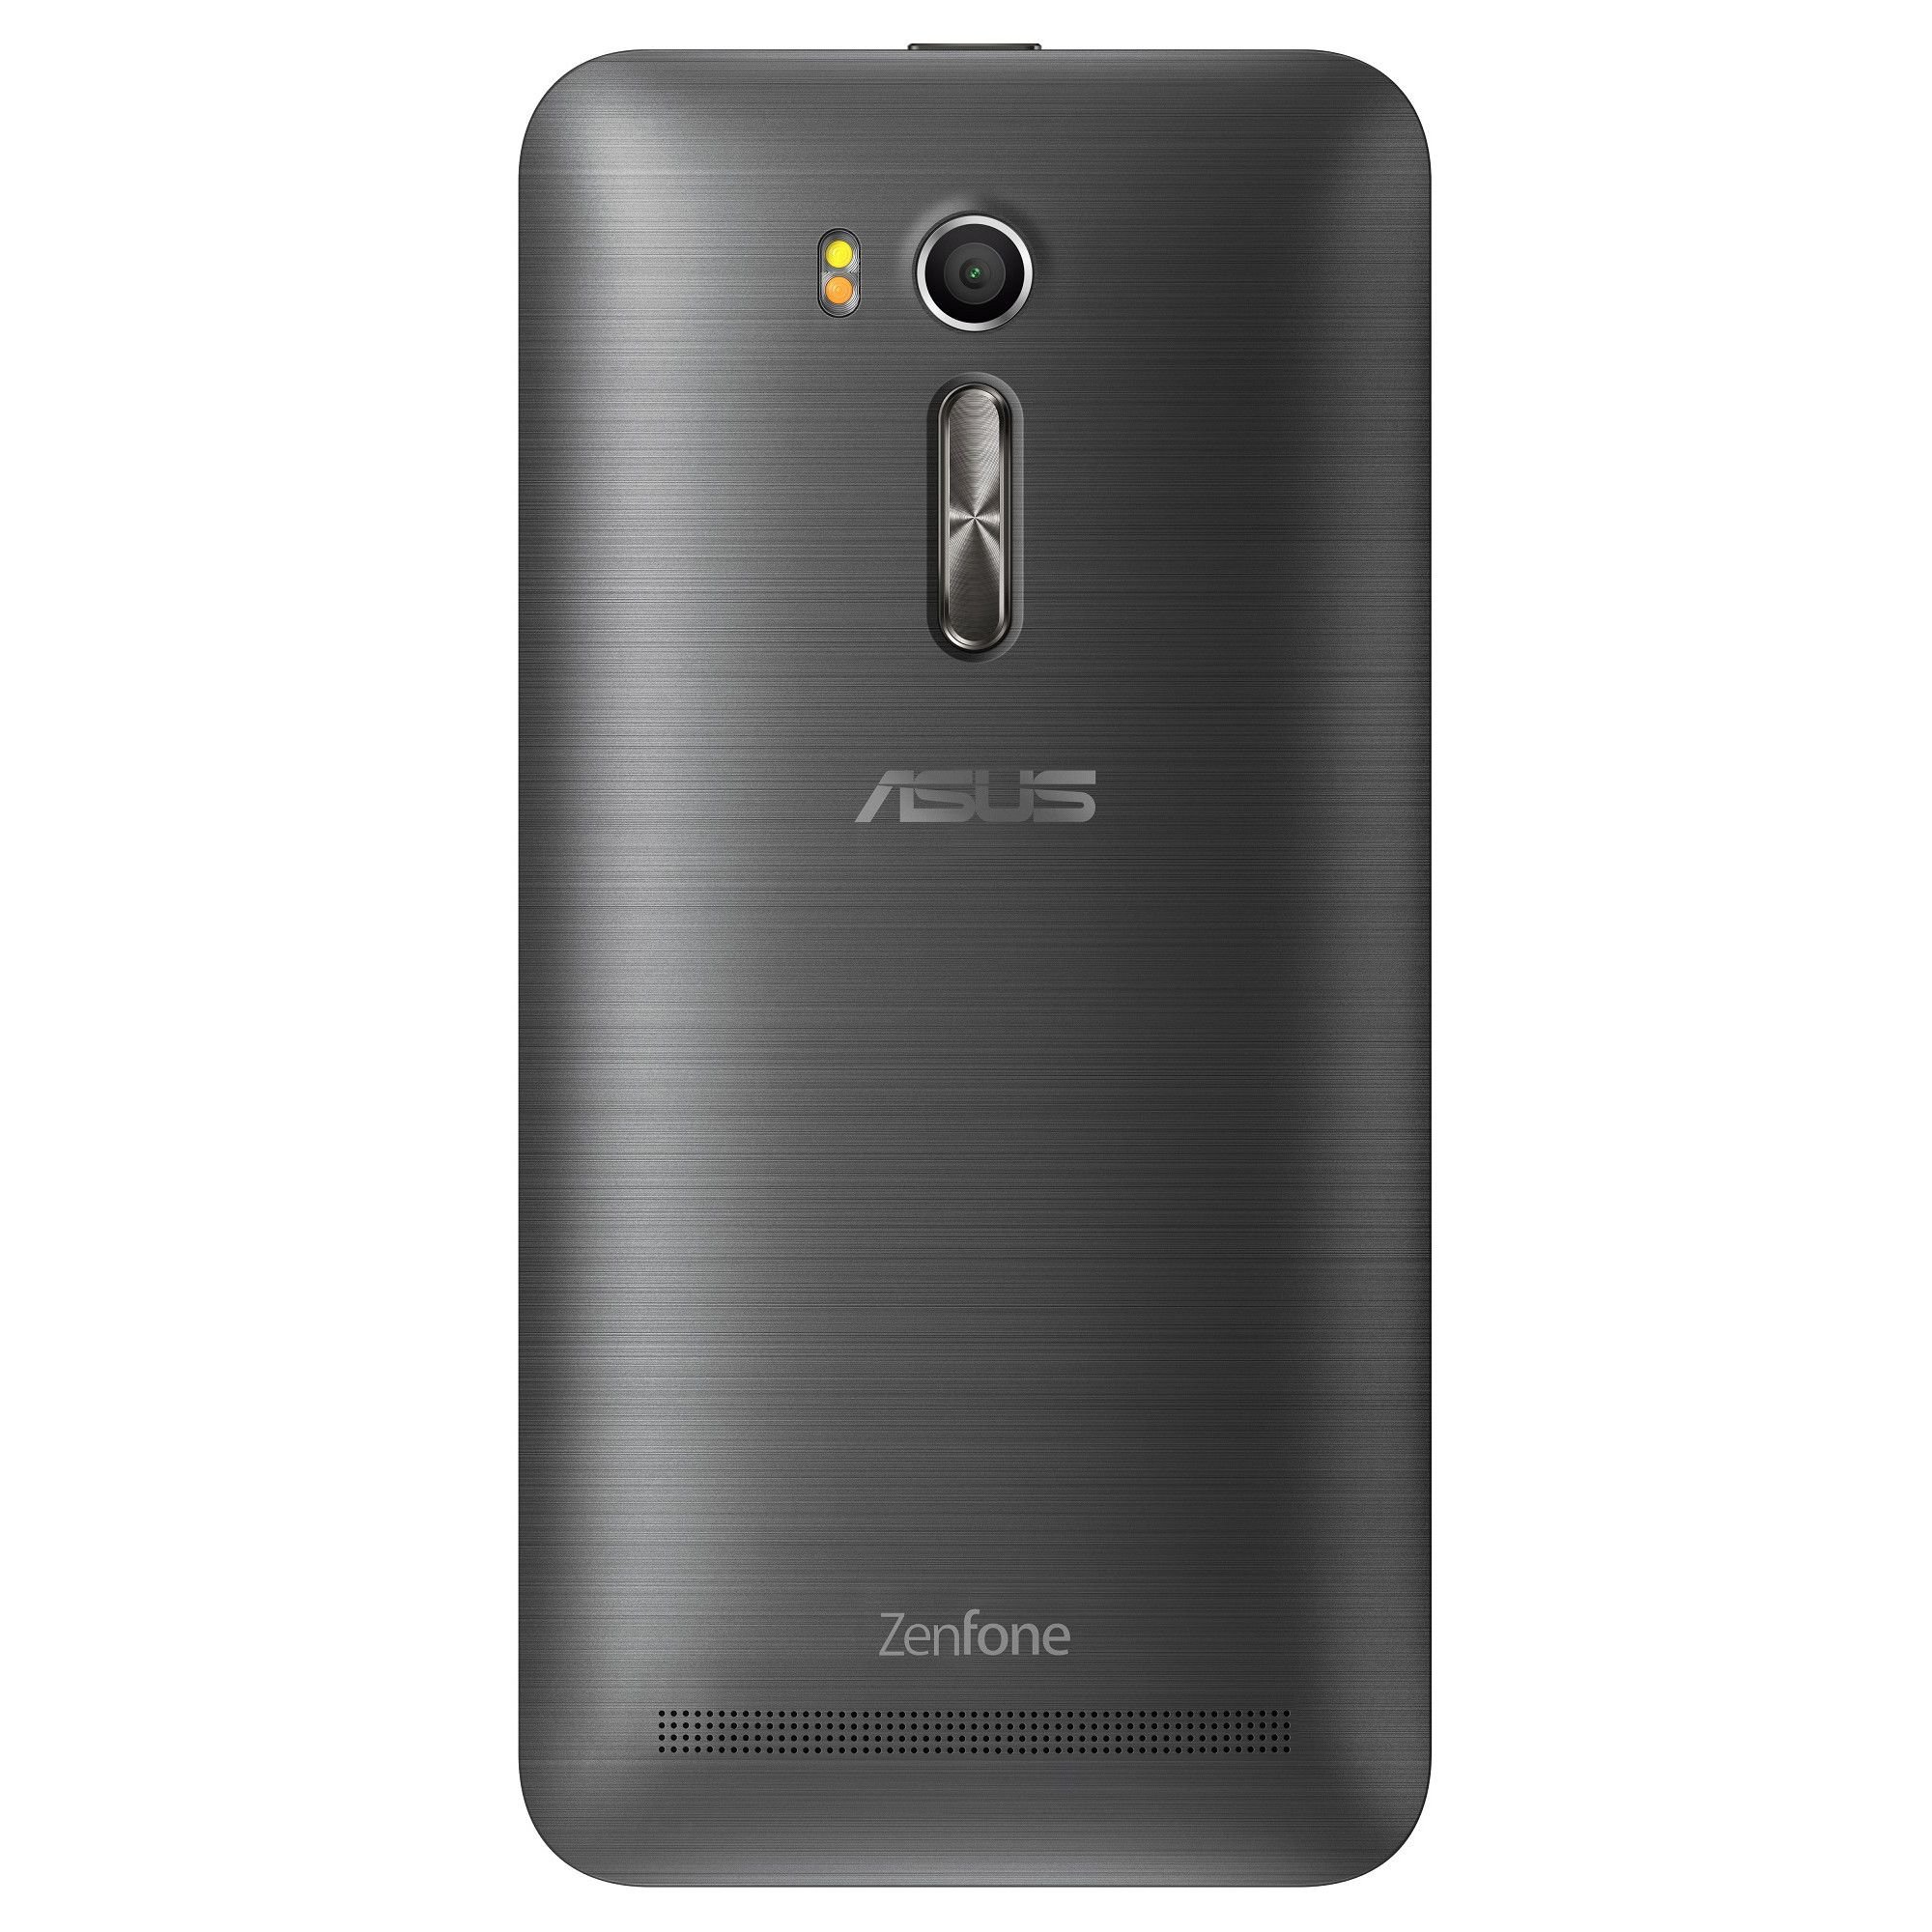 Asus Zenfone Go ZB55   2KL specs, review, release date - PhonesData